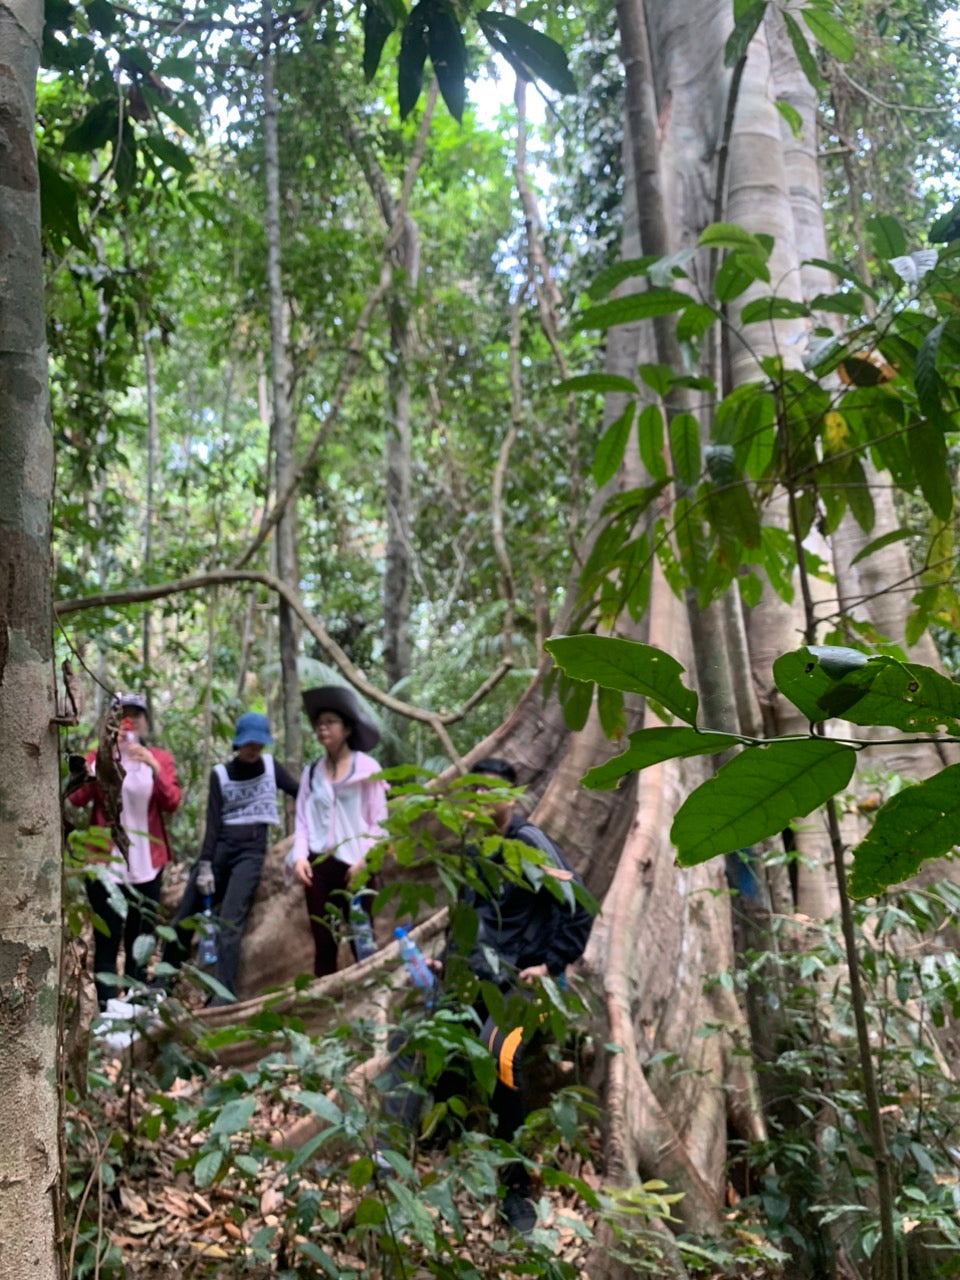 91A: 하루 종일 투어, Ta Lai 마을: 시간 여행, 코끼리 산책로 및 Ma 사람들의 문화 탐험